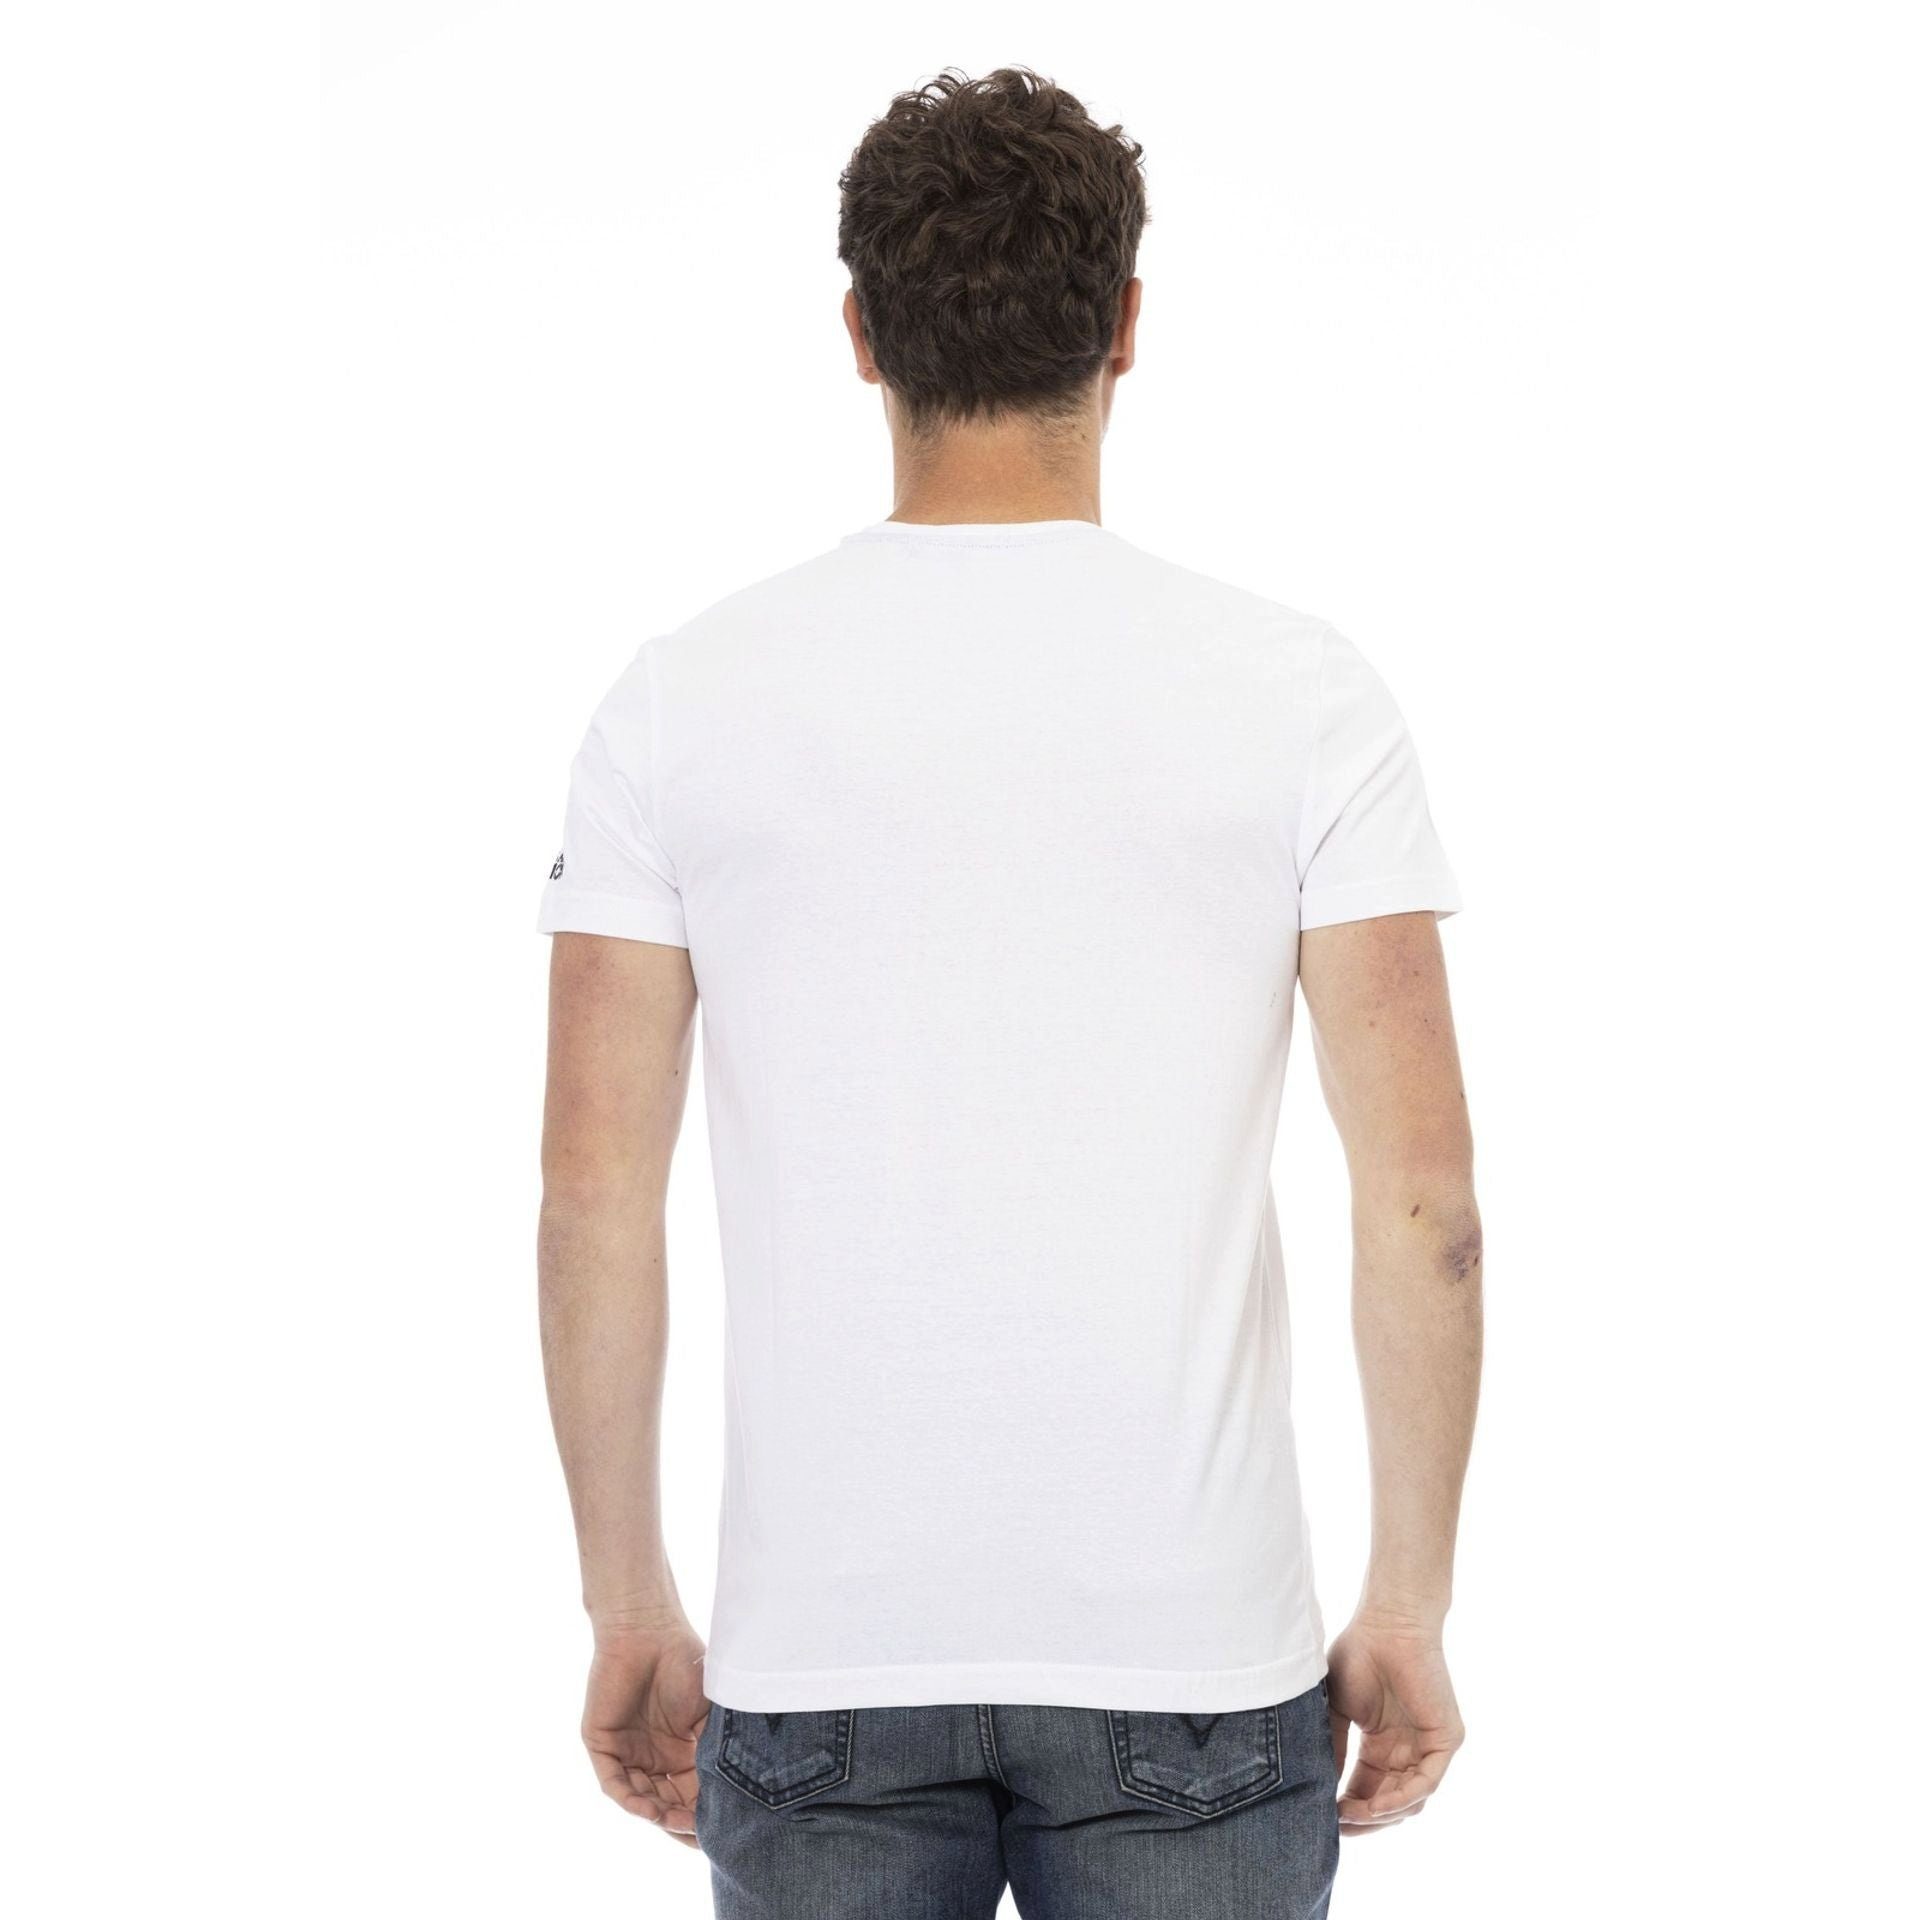 Trussardi T-Shirt Trussardi T-Shirts, zeichnet sich Note eine Es stilvolle verleiht durch das Action Weiß aber das subtile, aus, Logo-Muster